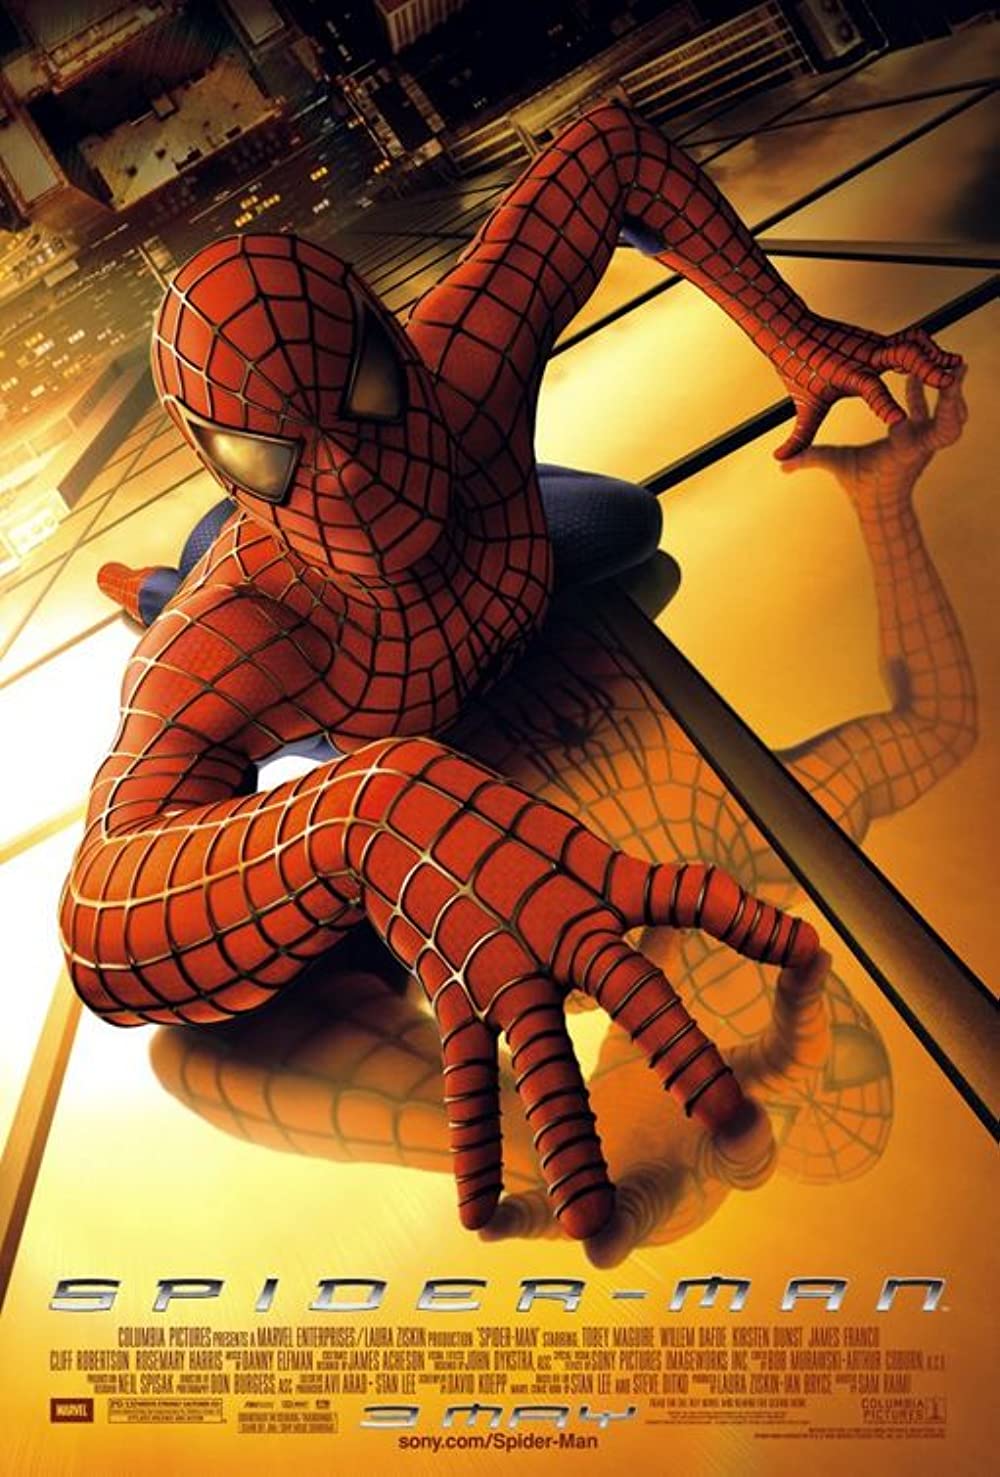 ดูหนังออนไลน์ฟรี Spider-Man 1 ไอ้แมงมุม 1